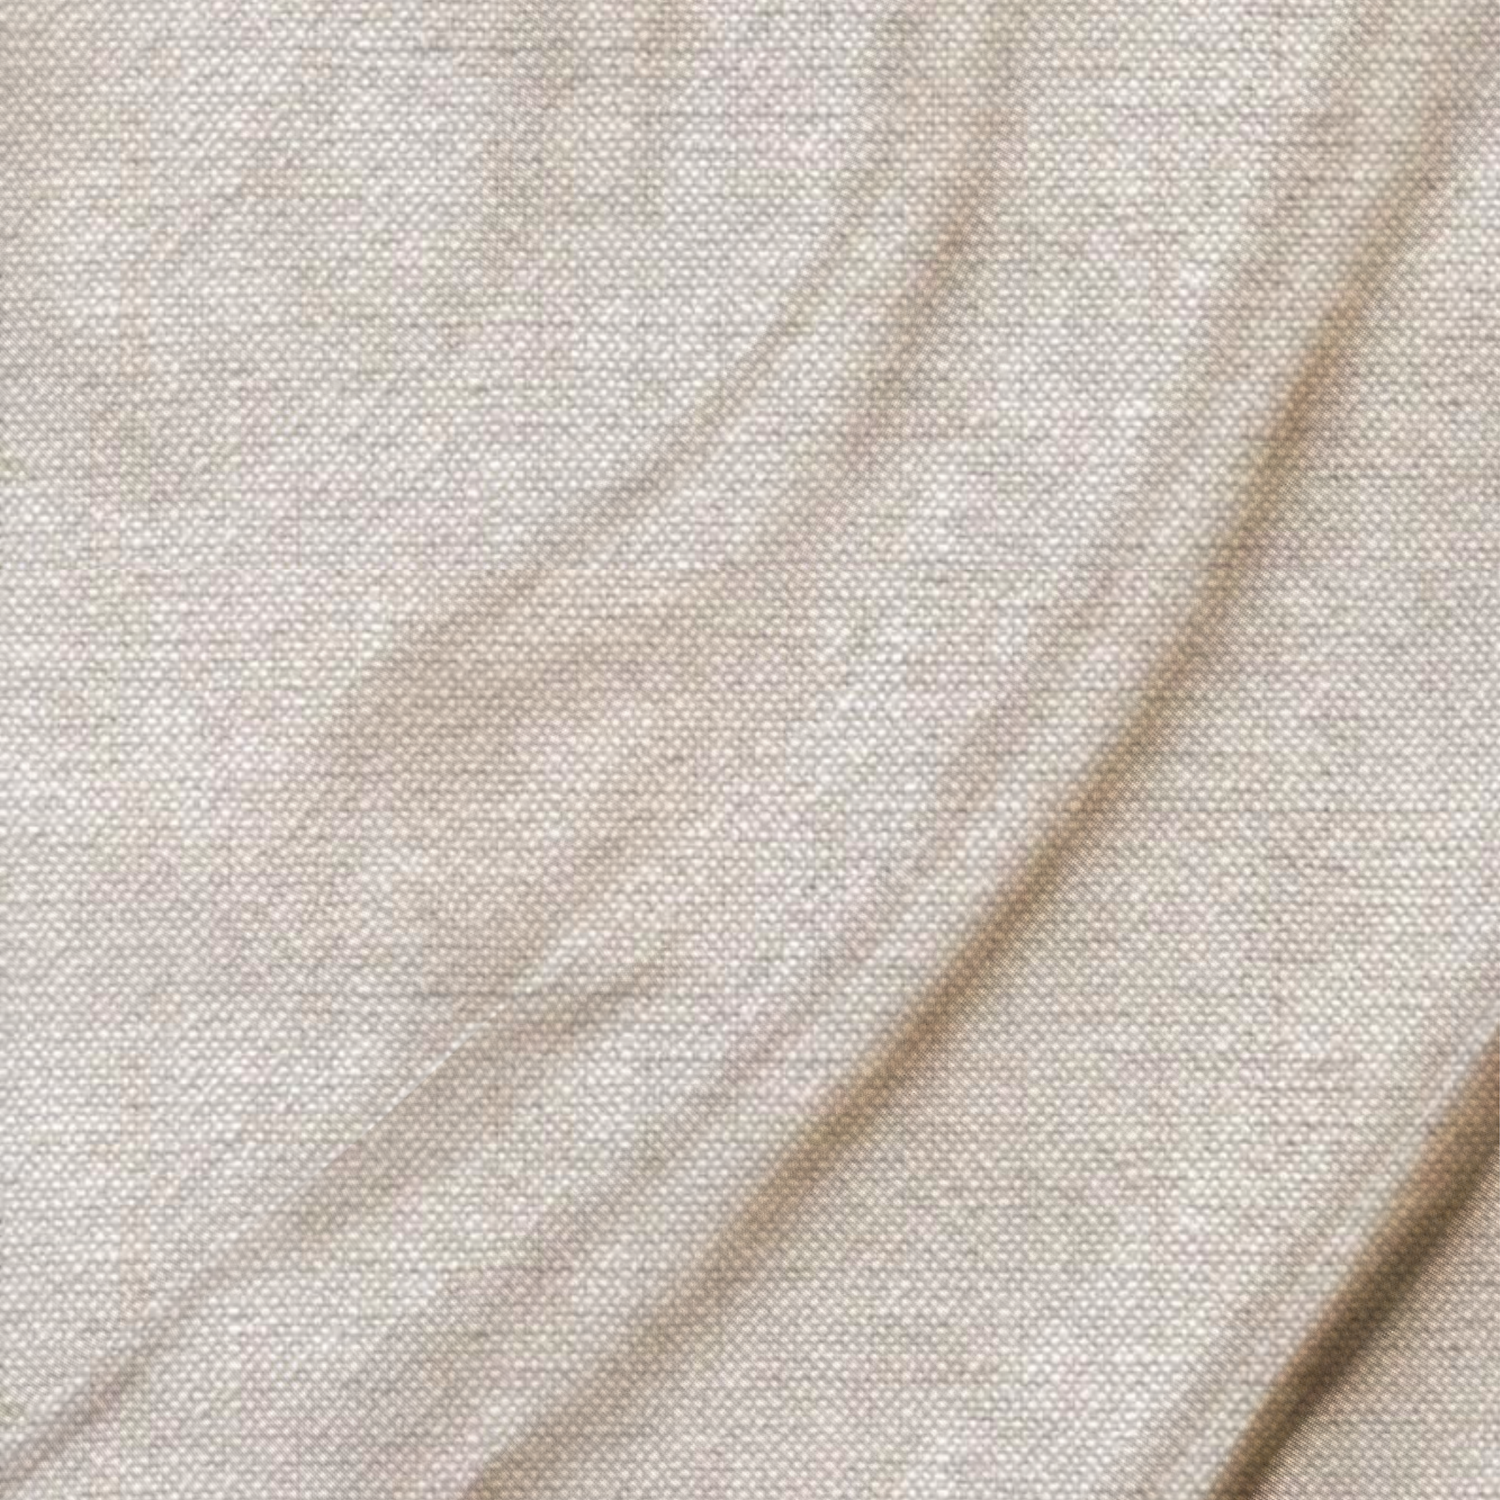 Beige Linen Fabric